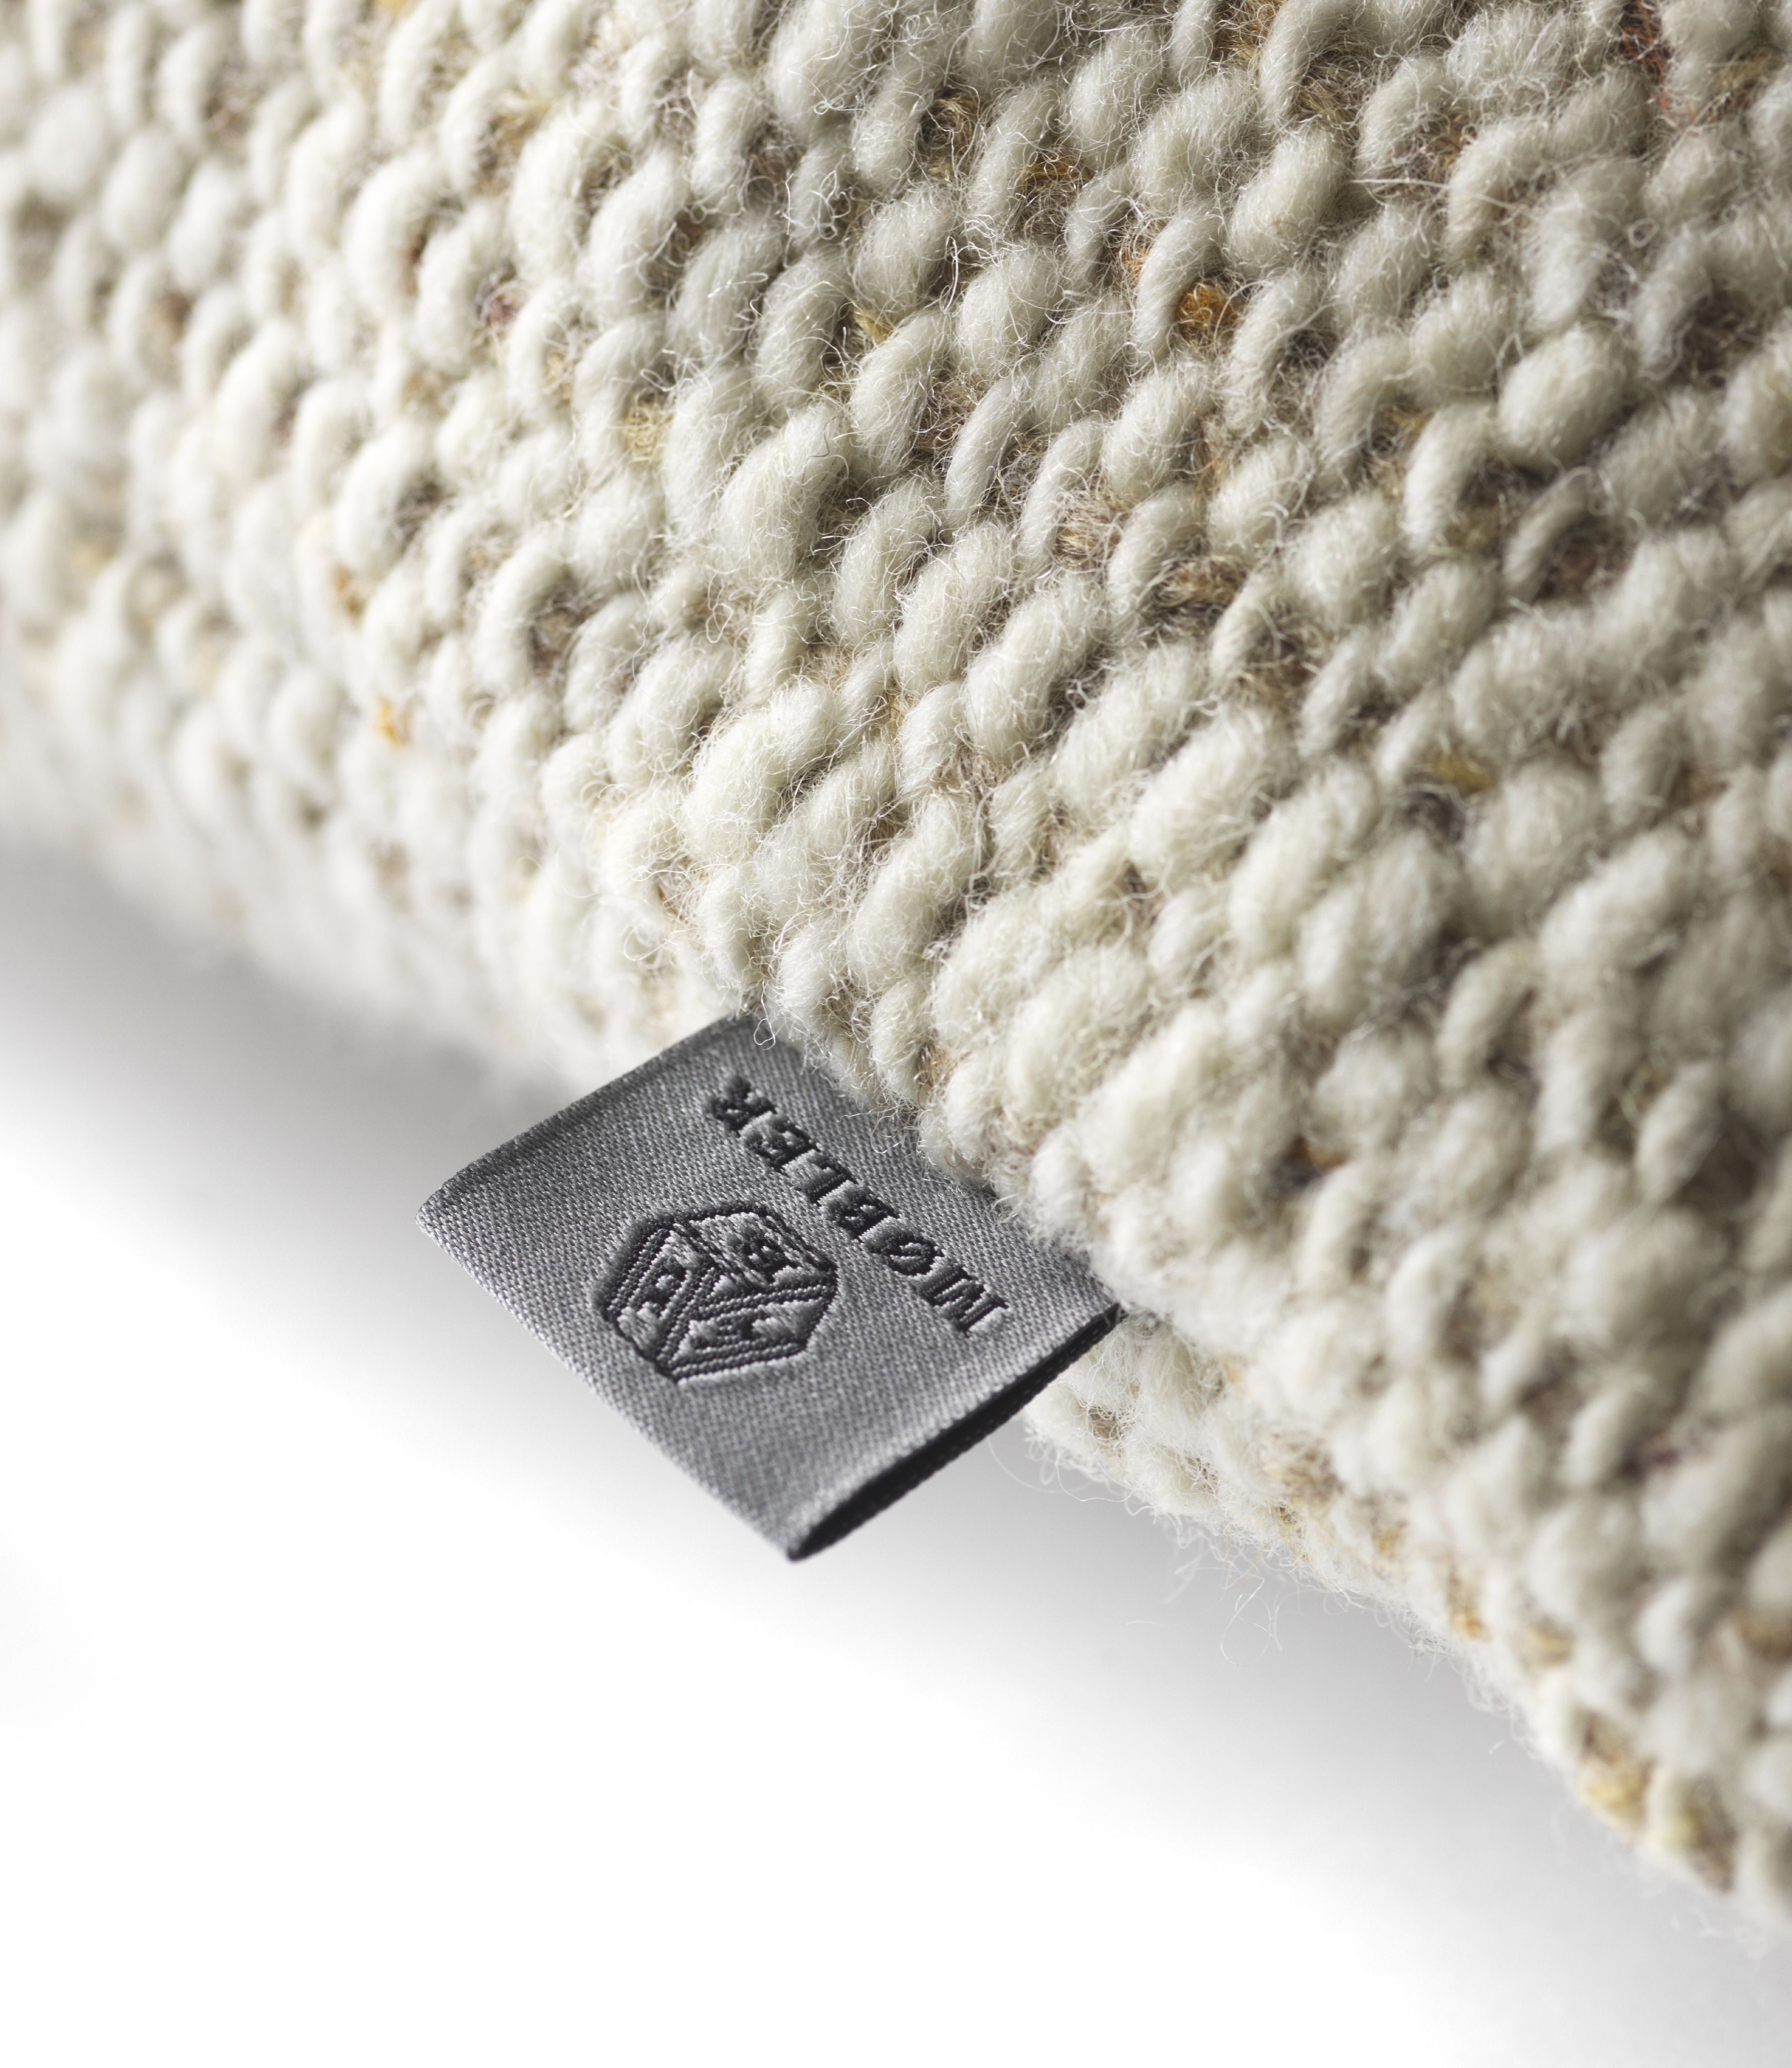 FDBMøblerR37 Hvide Sande Cushion 45x55厘米，羊毛/米色